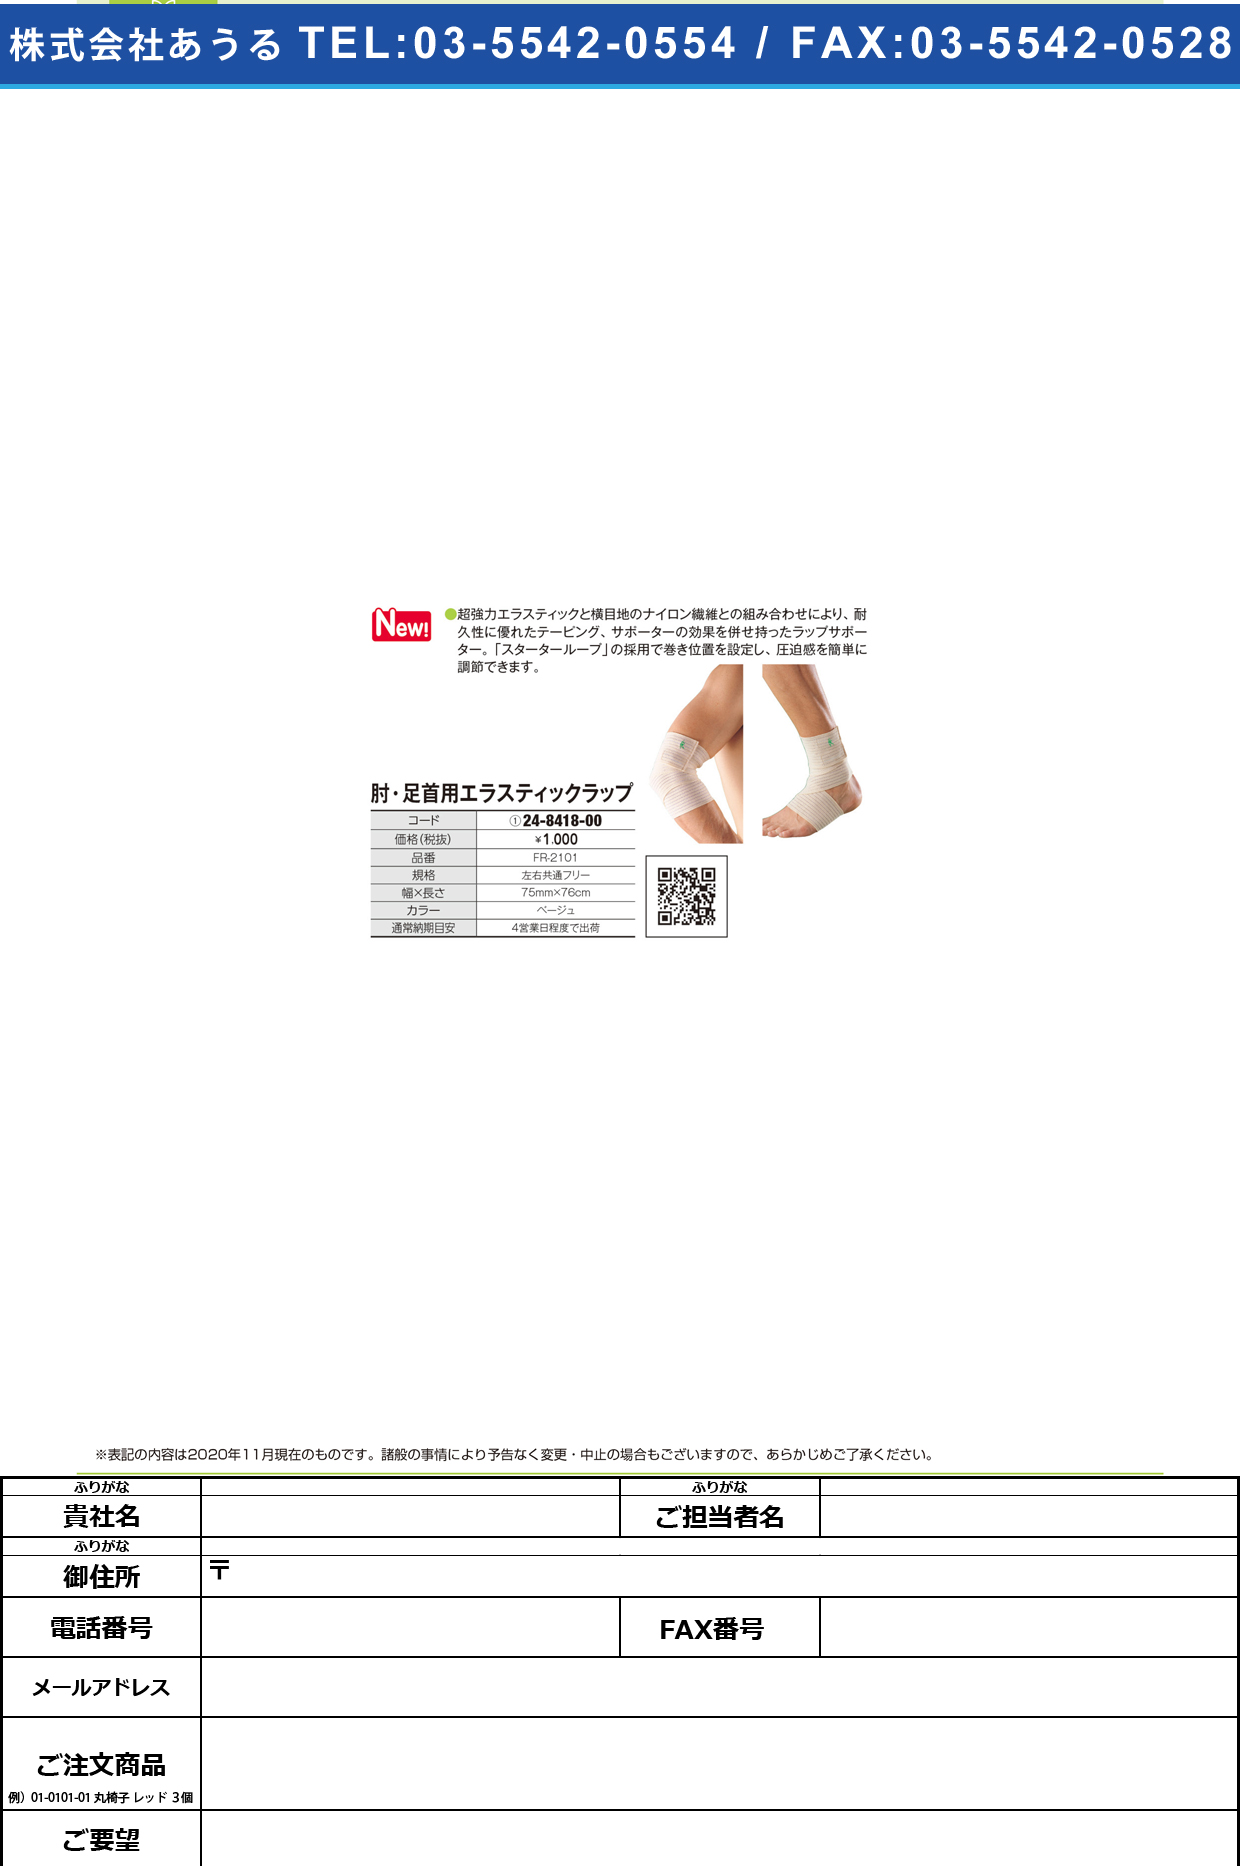 肘・足首用エラスティックラップ FR-2101FR-2101(24-8418-00)【ファーストレイト】(販売単位:1)